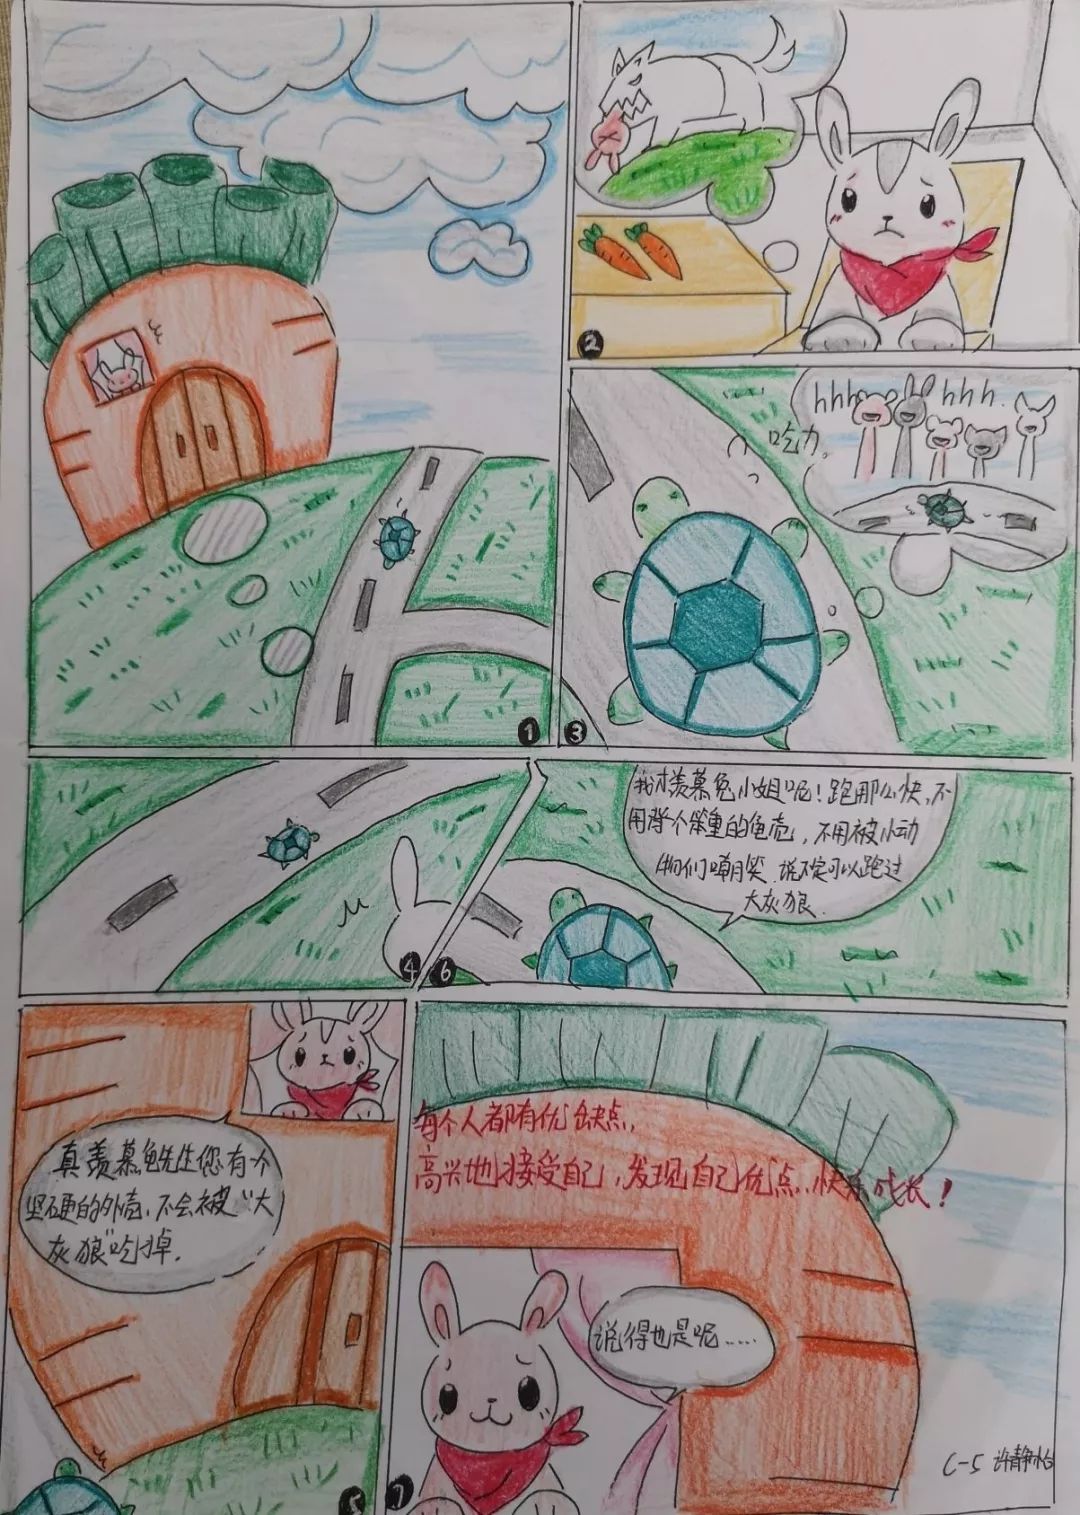 晋江市中小学校园心理漫画评选大赛,初中组的作品《美好》获一等奖